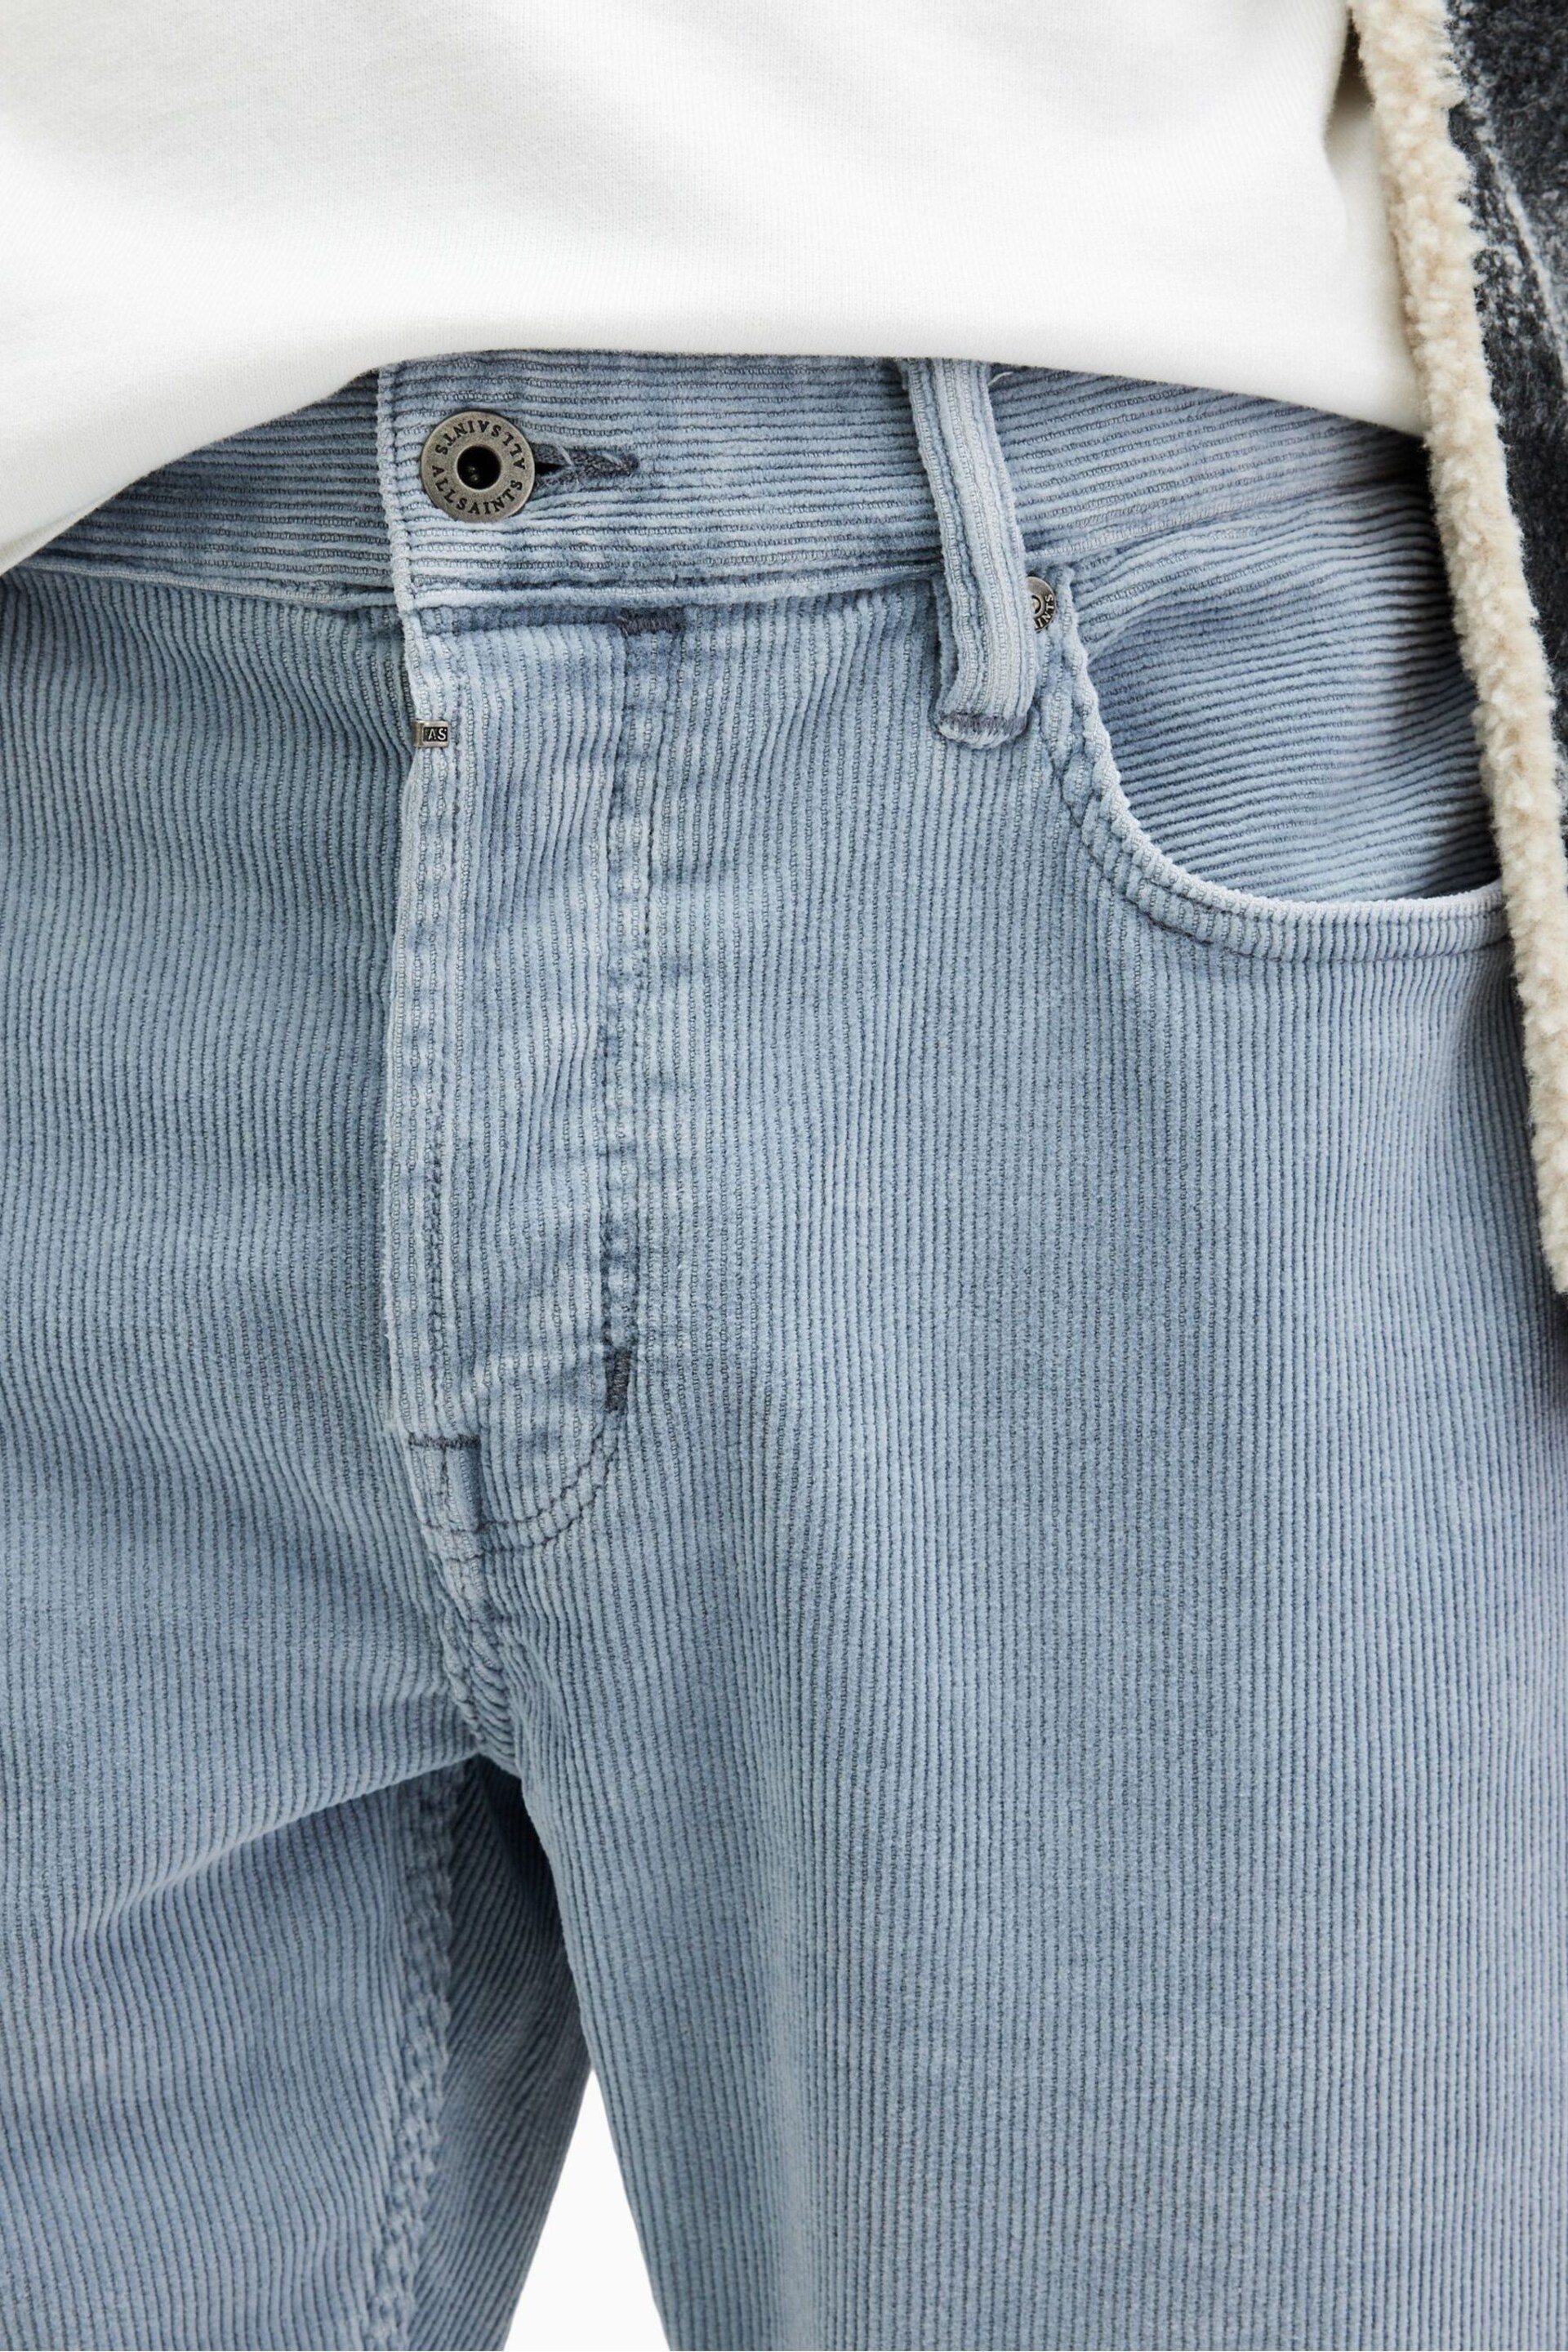 AllSaints Blue Rex Corduroy Jeans - Image 4 of 6